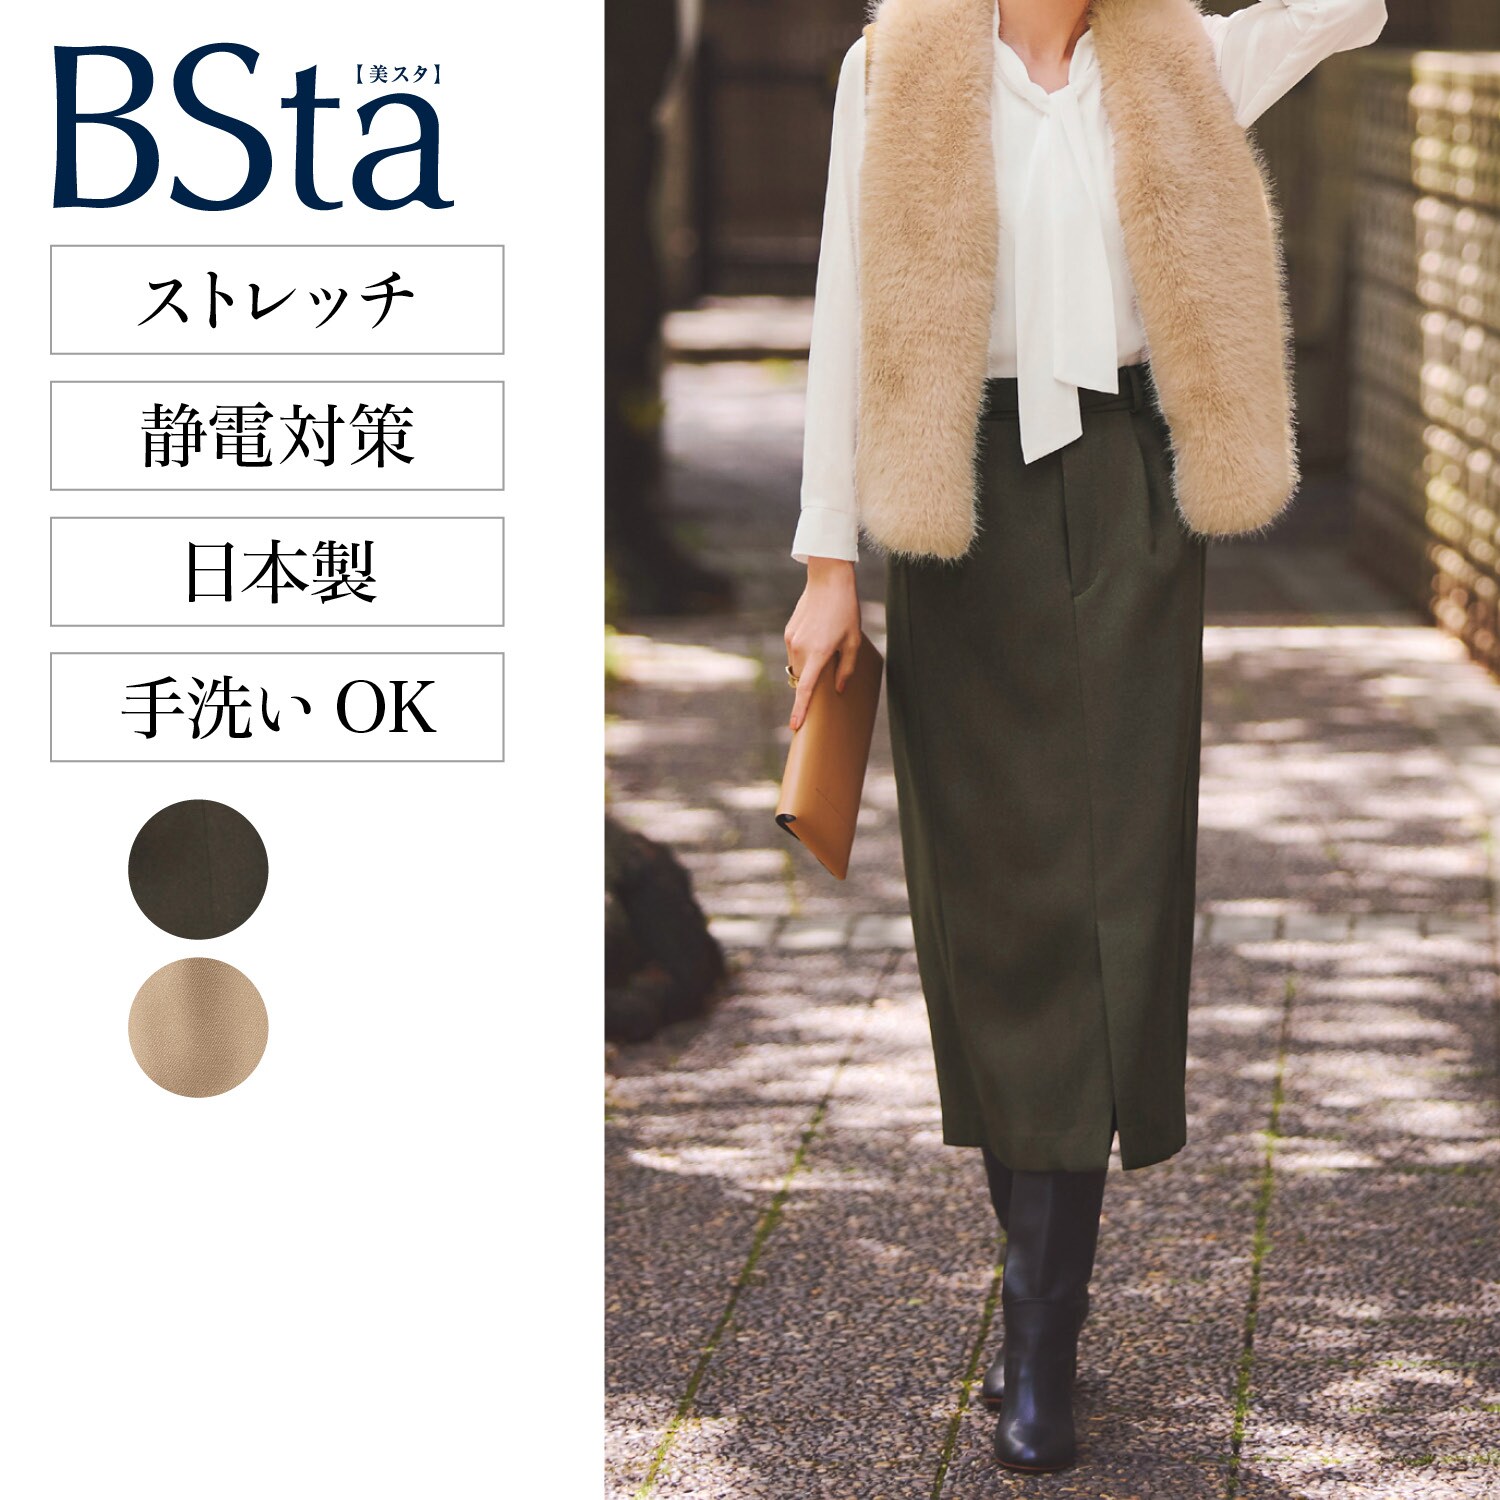 【スタイルノート/StyleNote】【BSta】Iラインスカート[日本製]